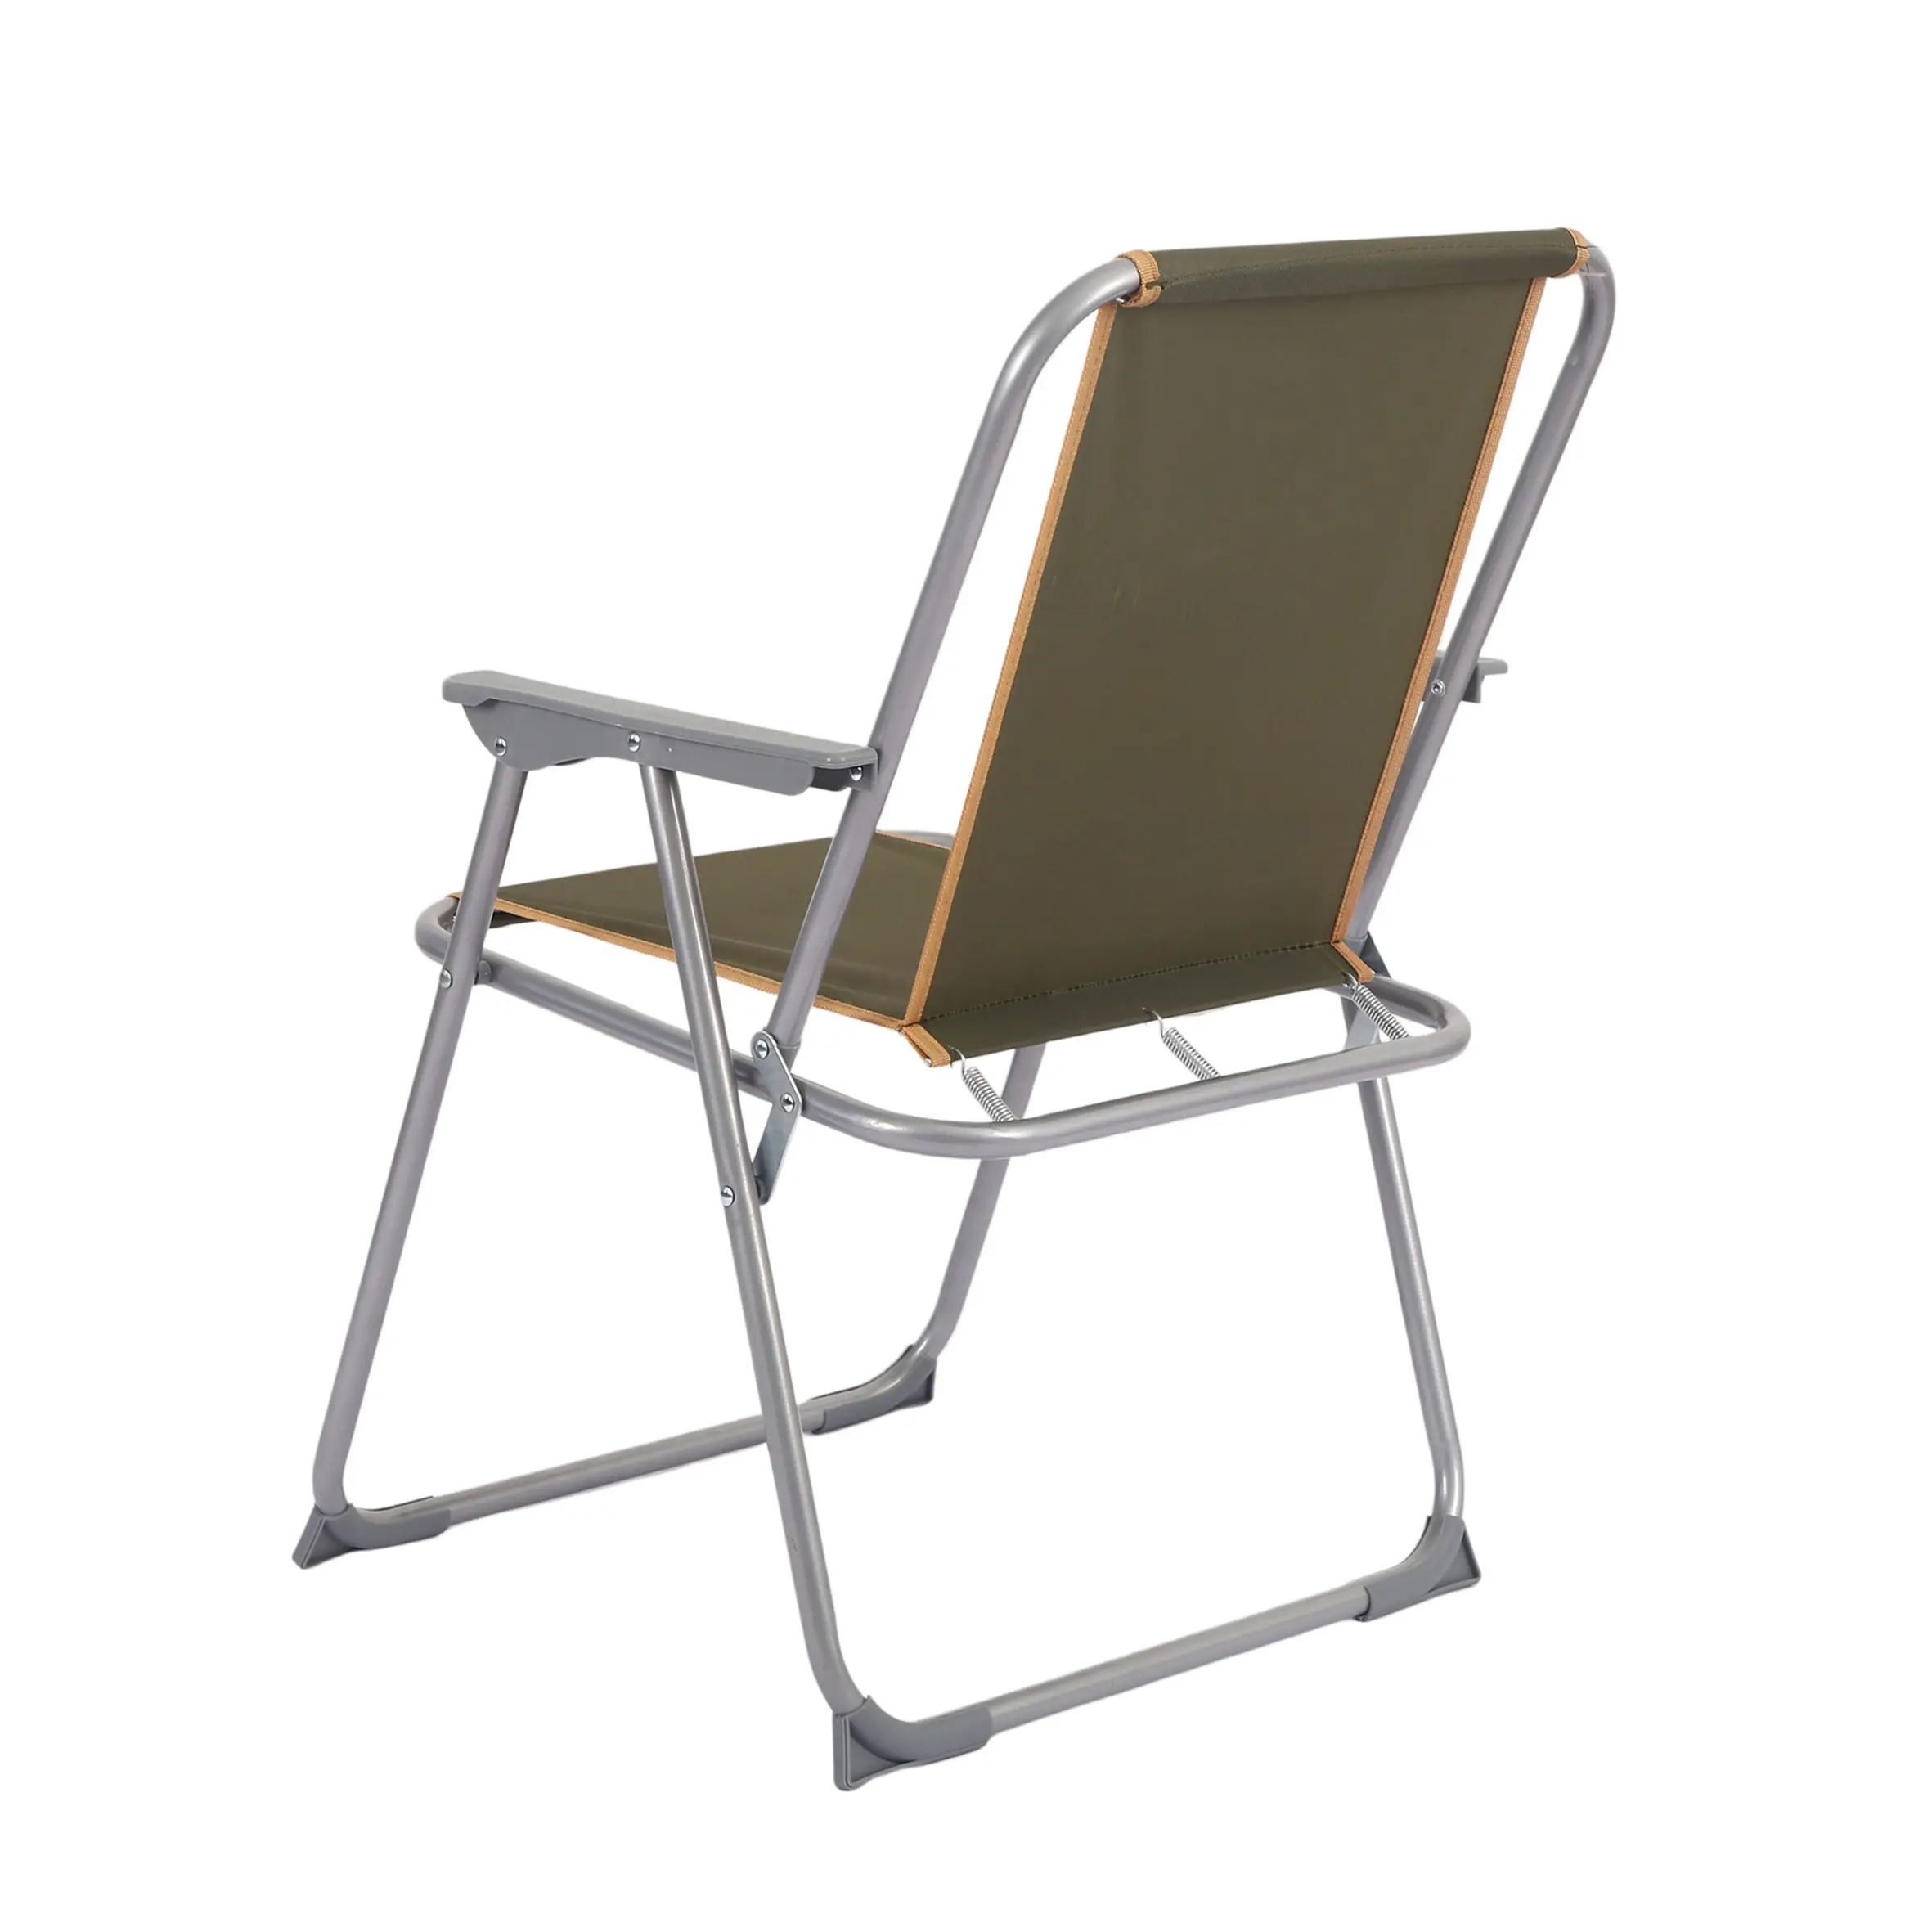 Outdoor alumínio duplo Seat Camp, banco cadeiras portátil dobrável praia cadeiras 2 pessoa/